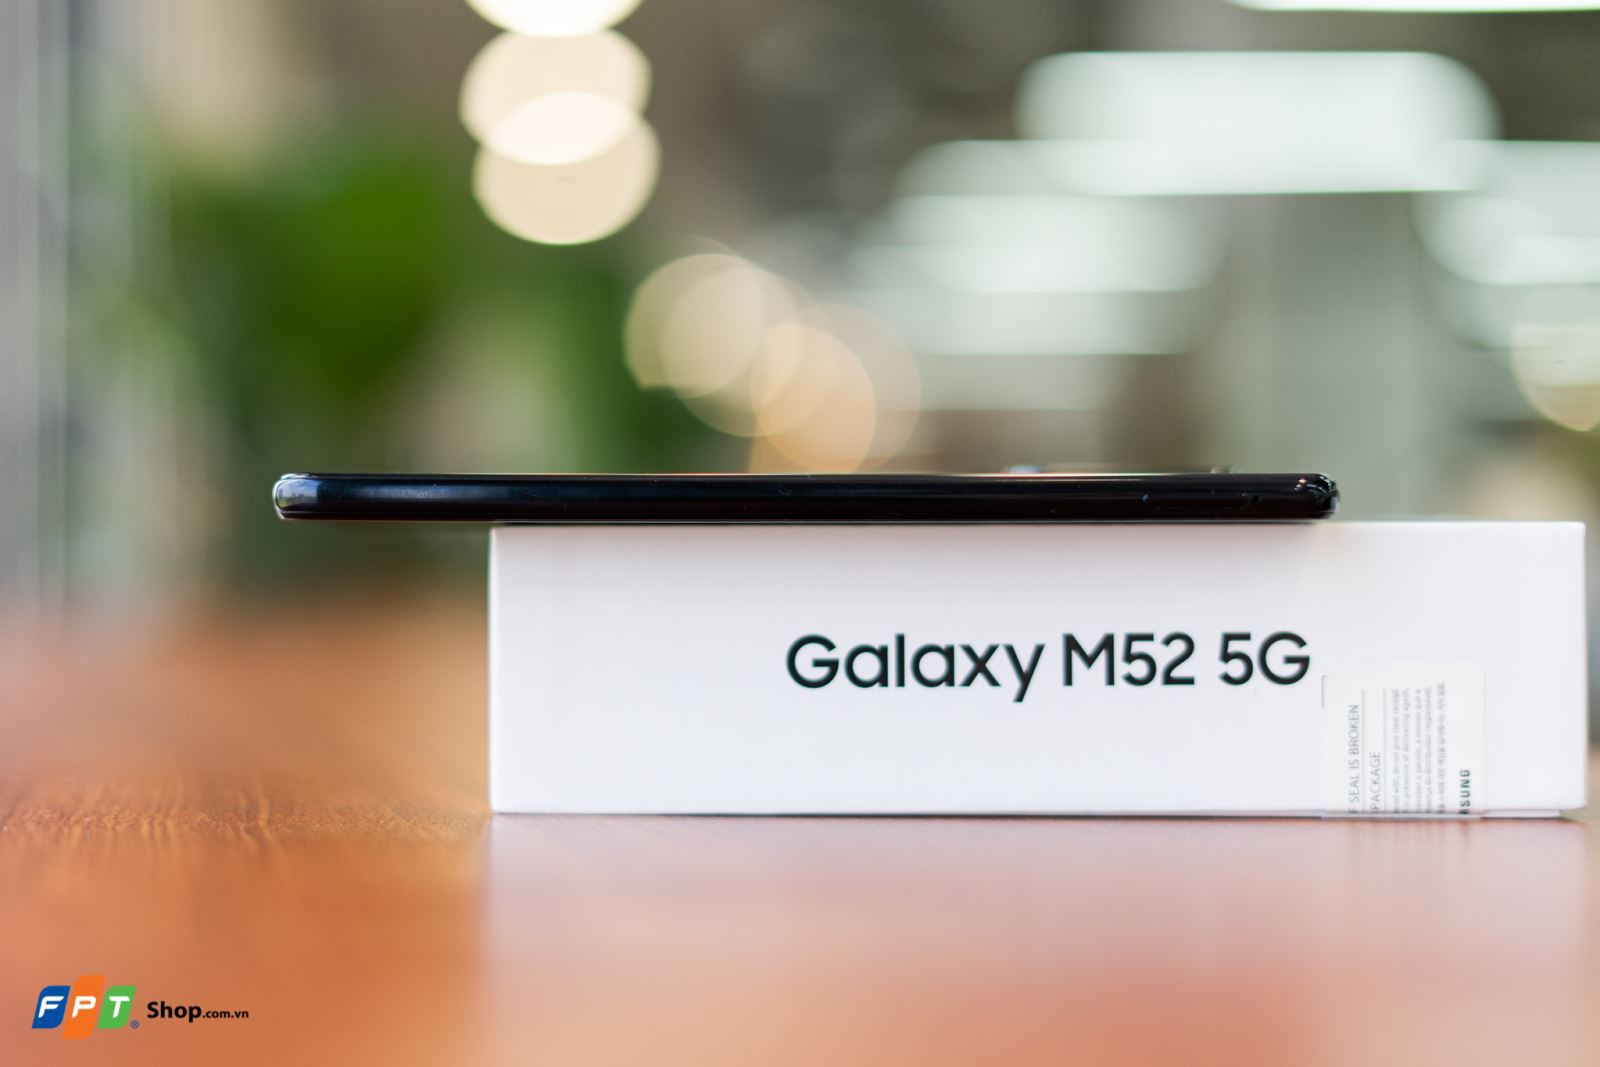 Mở hộp Samsung Galaxy M52 5G tại FPT Shop: Mẫu điện thoại toàn năng trong phân khúc tầm trung